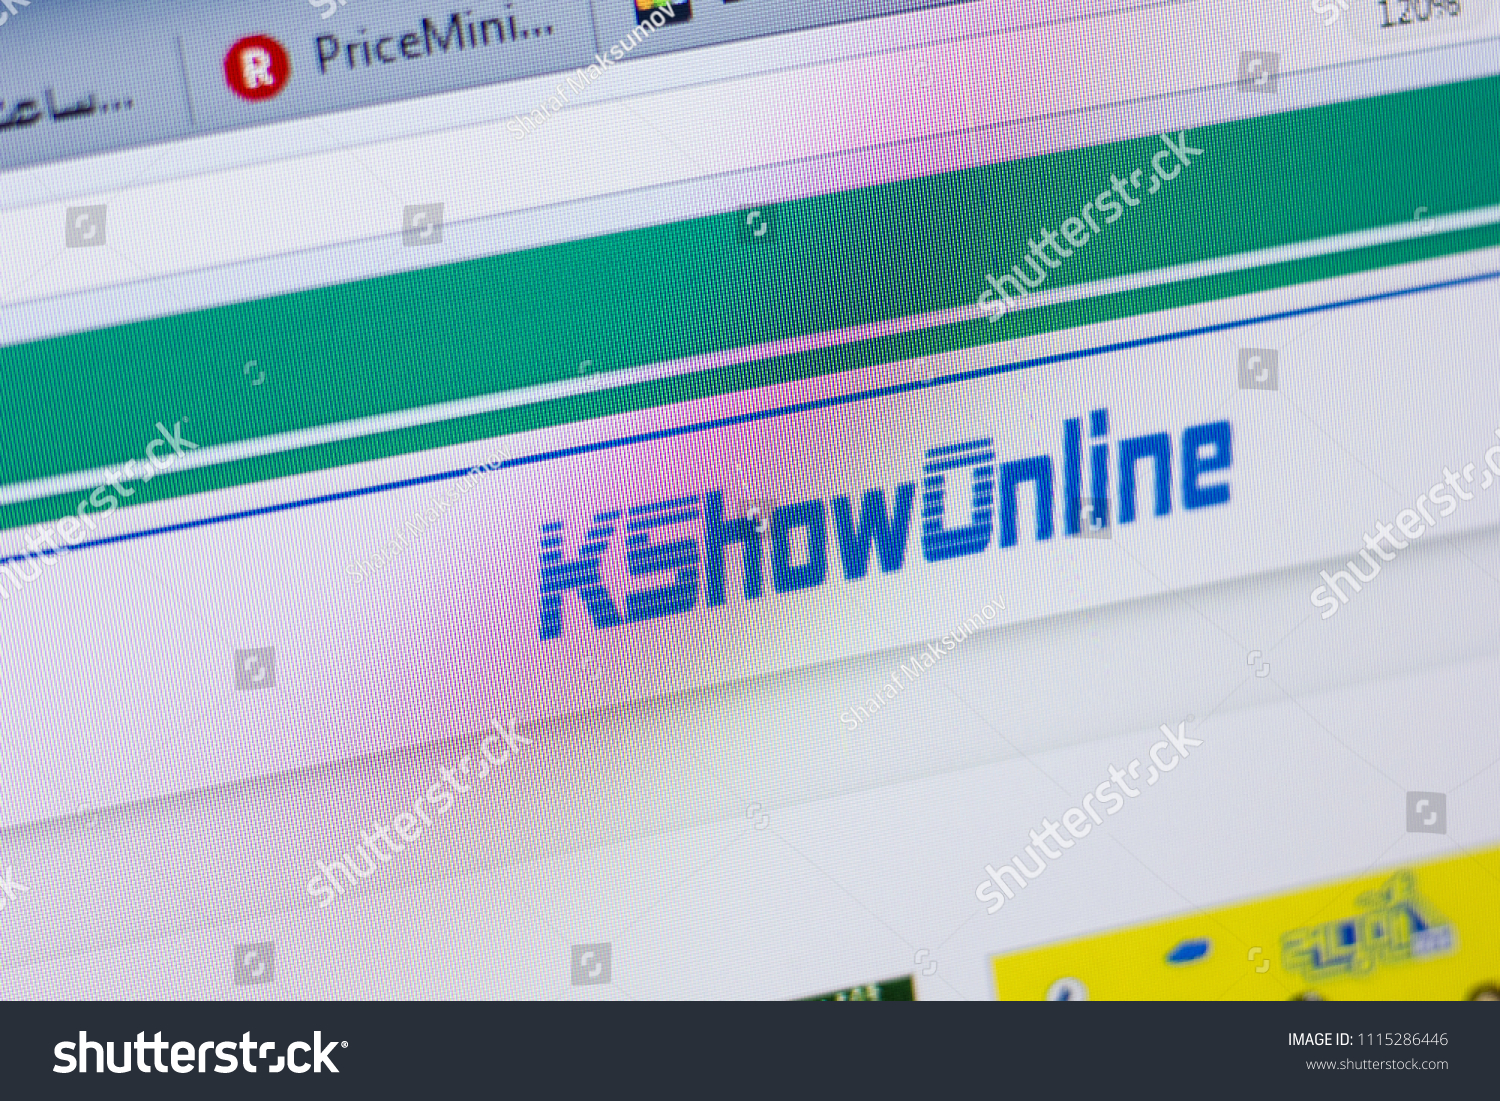 Kshowonline KSHOWONLINE: Website